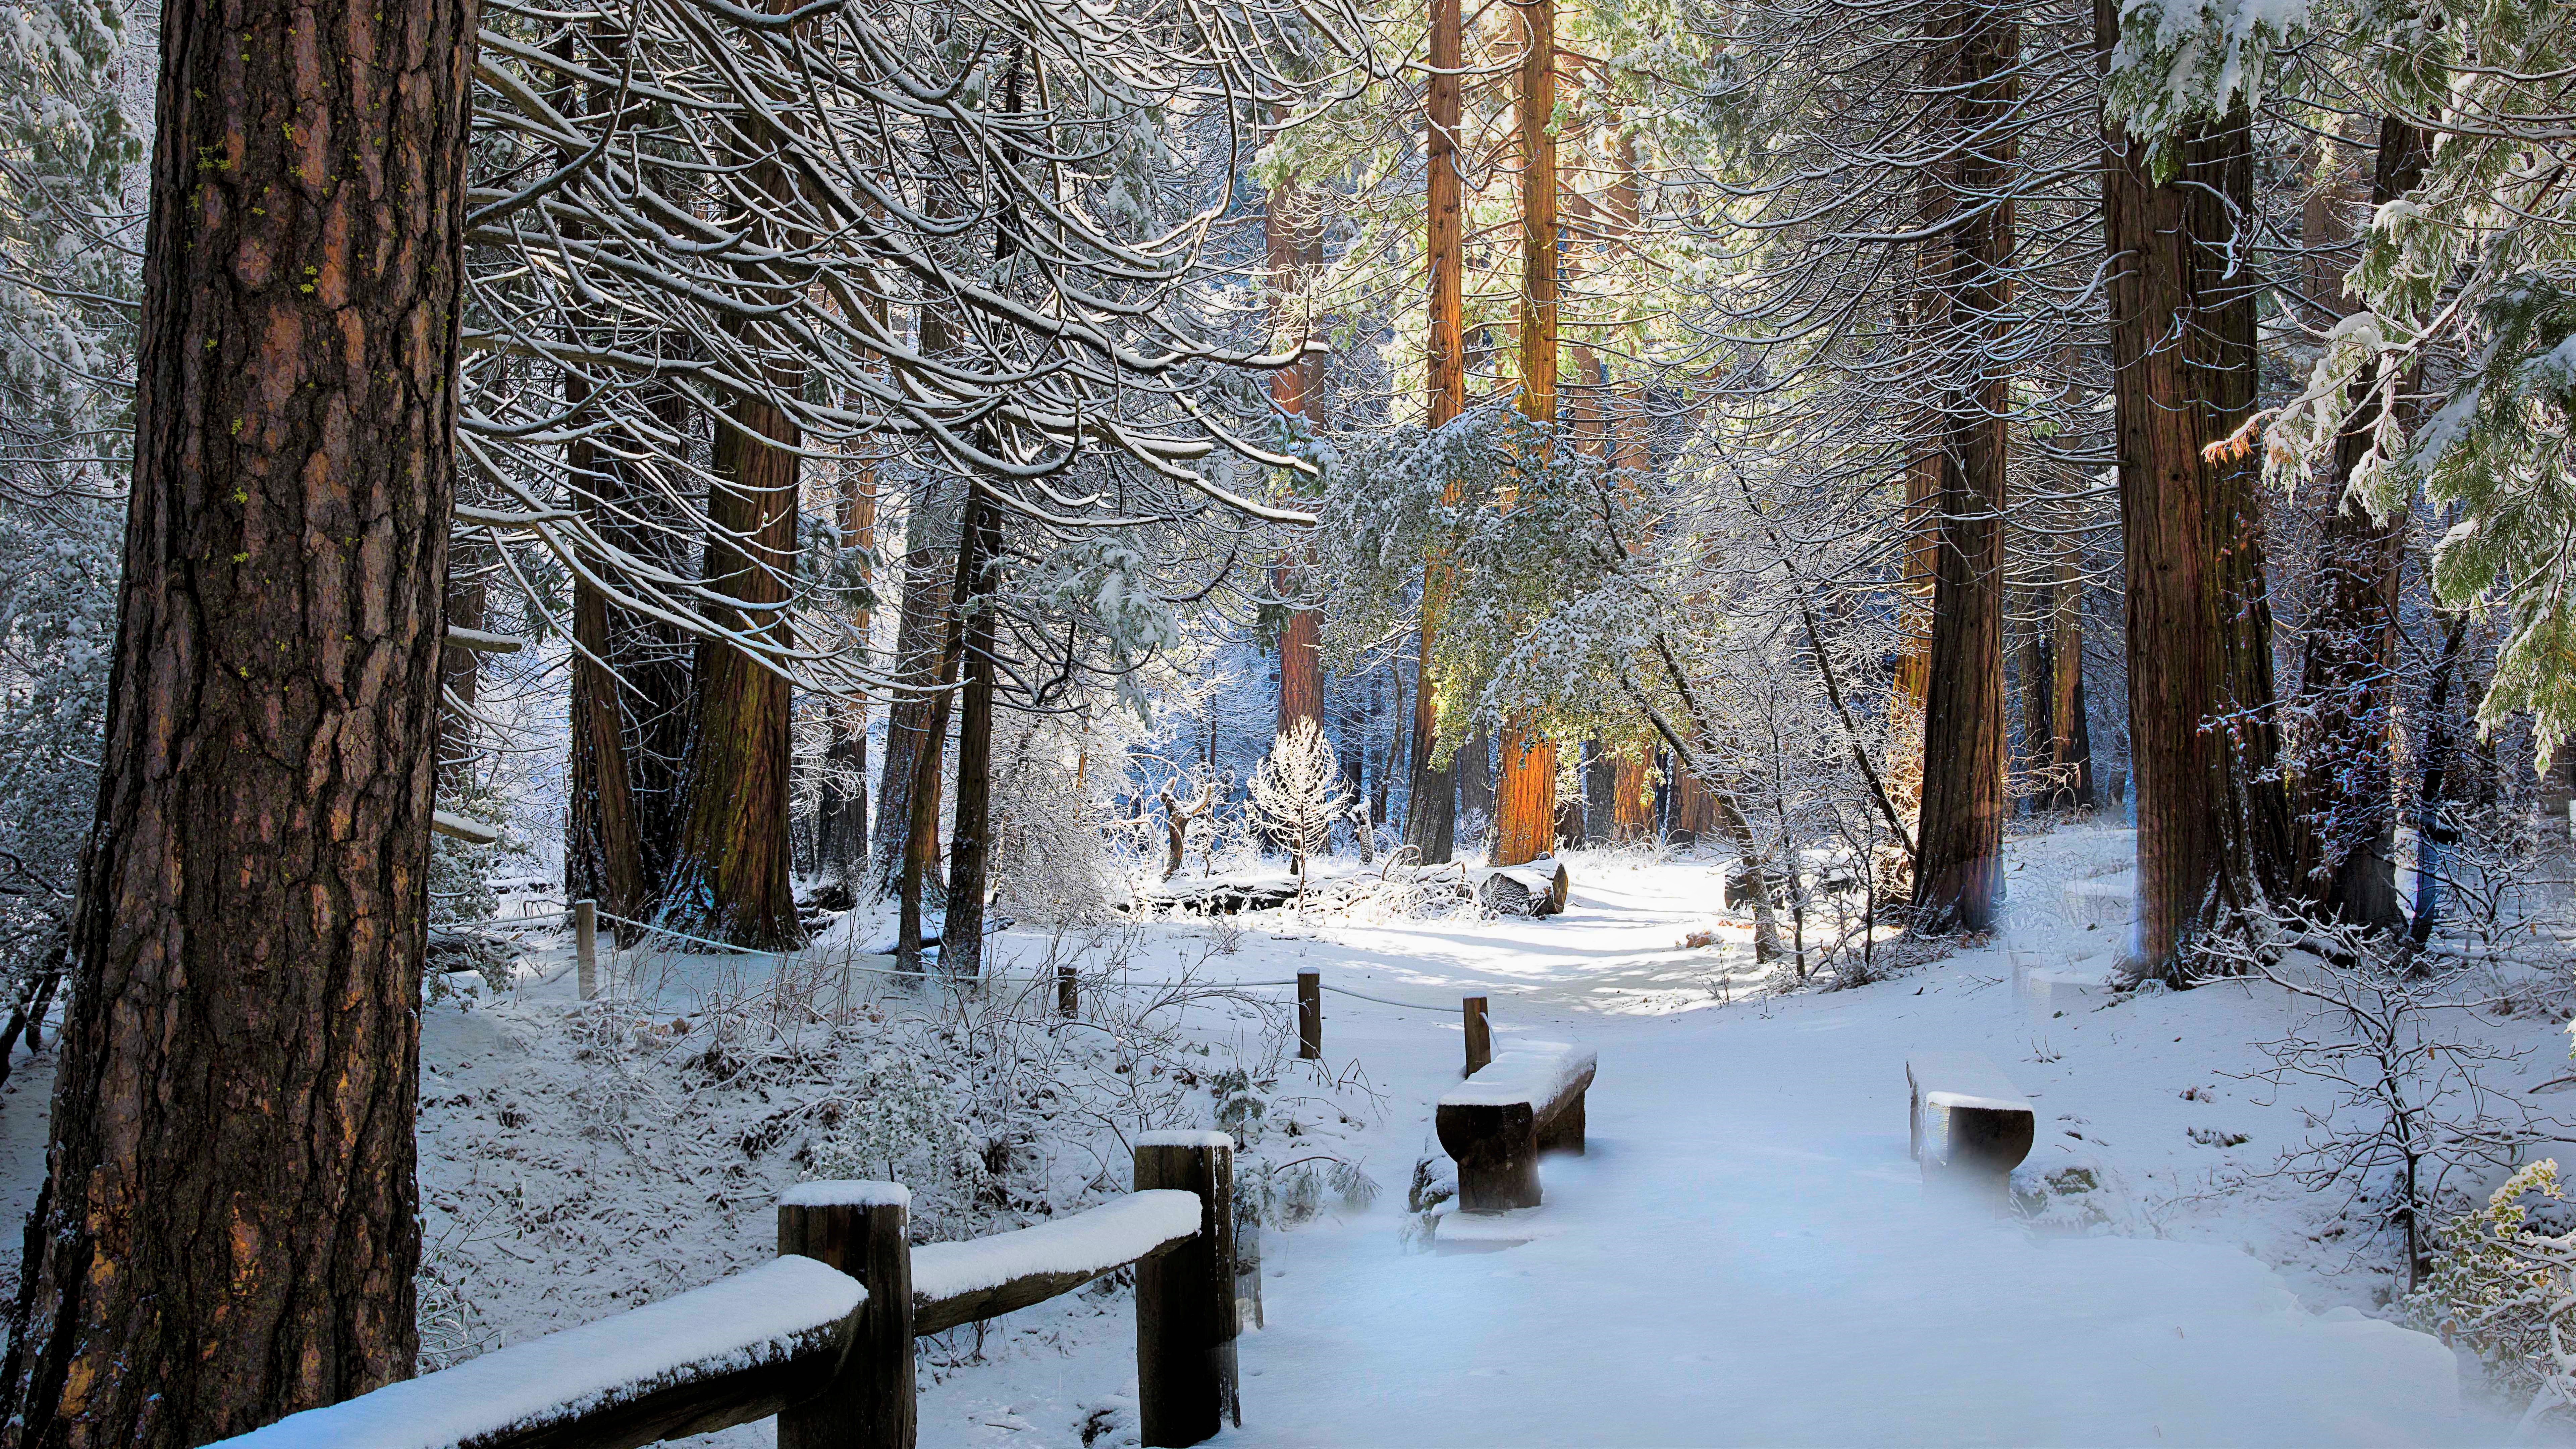 Скачать обои бесплатно Зима, Снег, Лес, Дерево, Скамейка, Фотографии картинка на рабочий стол ПК